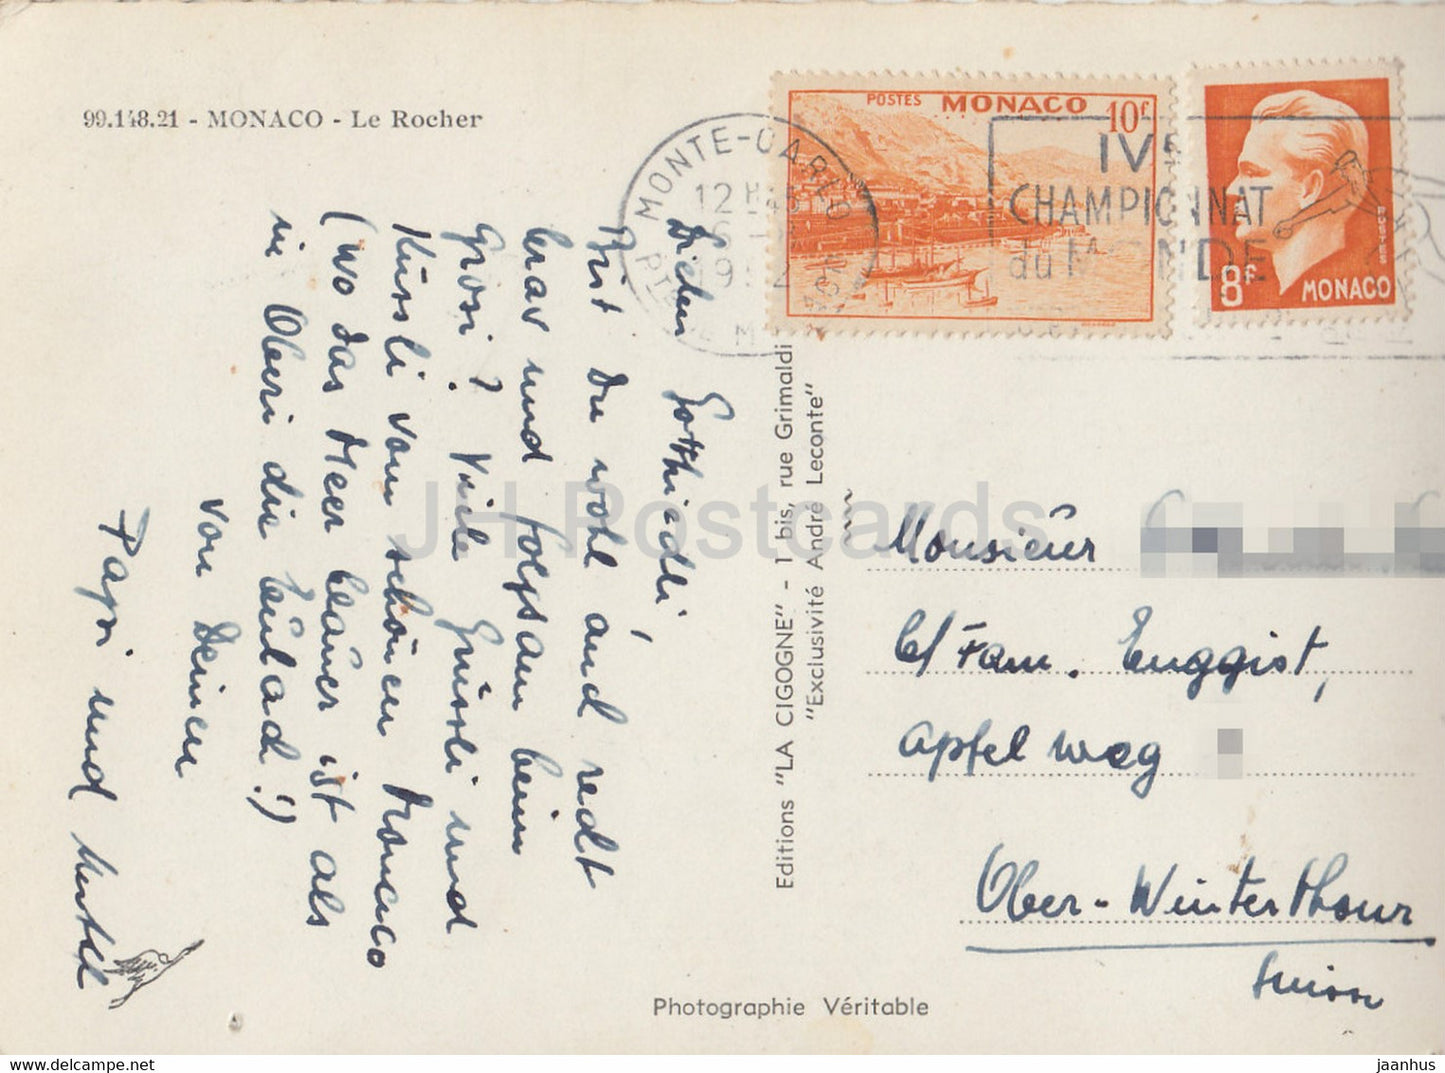 Le Rocher - carte postale ancienne - 1952 - Monaco - occasion